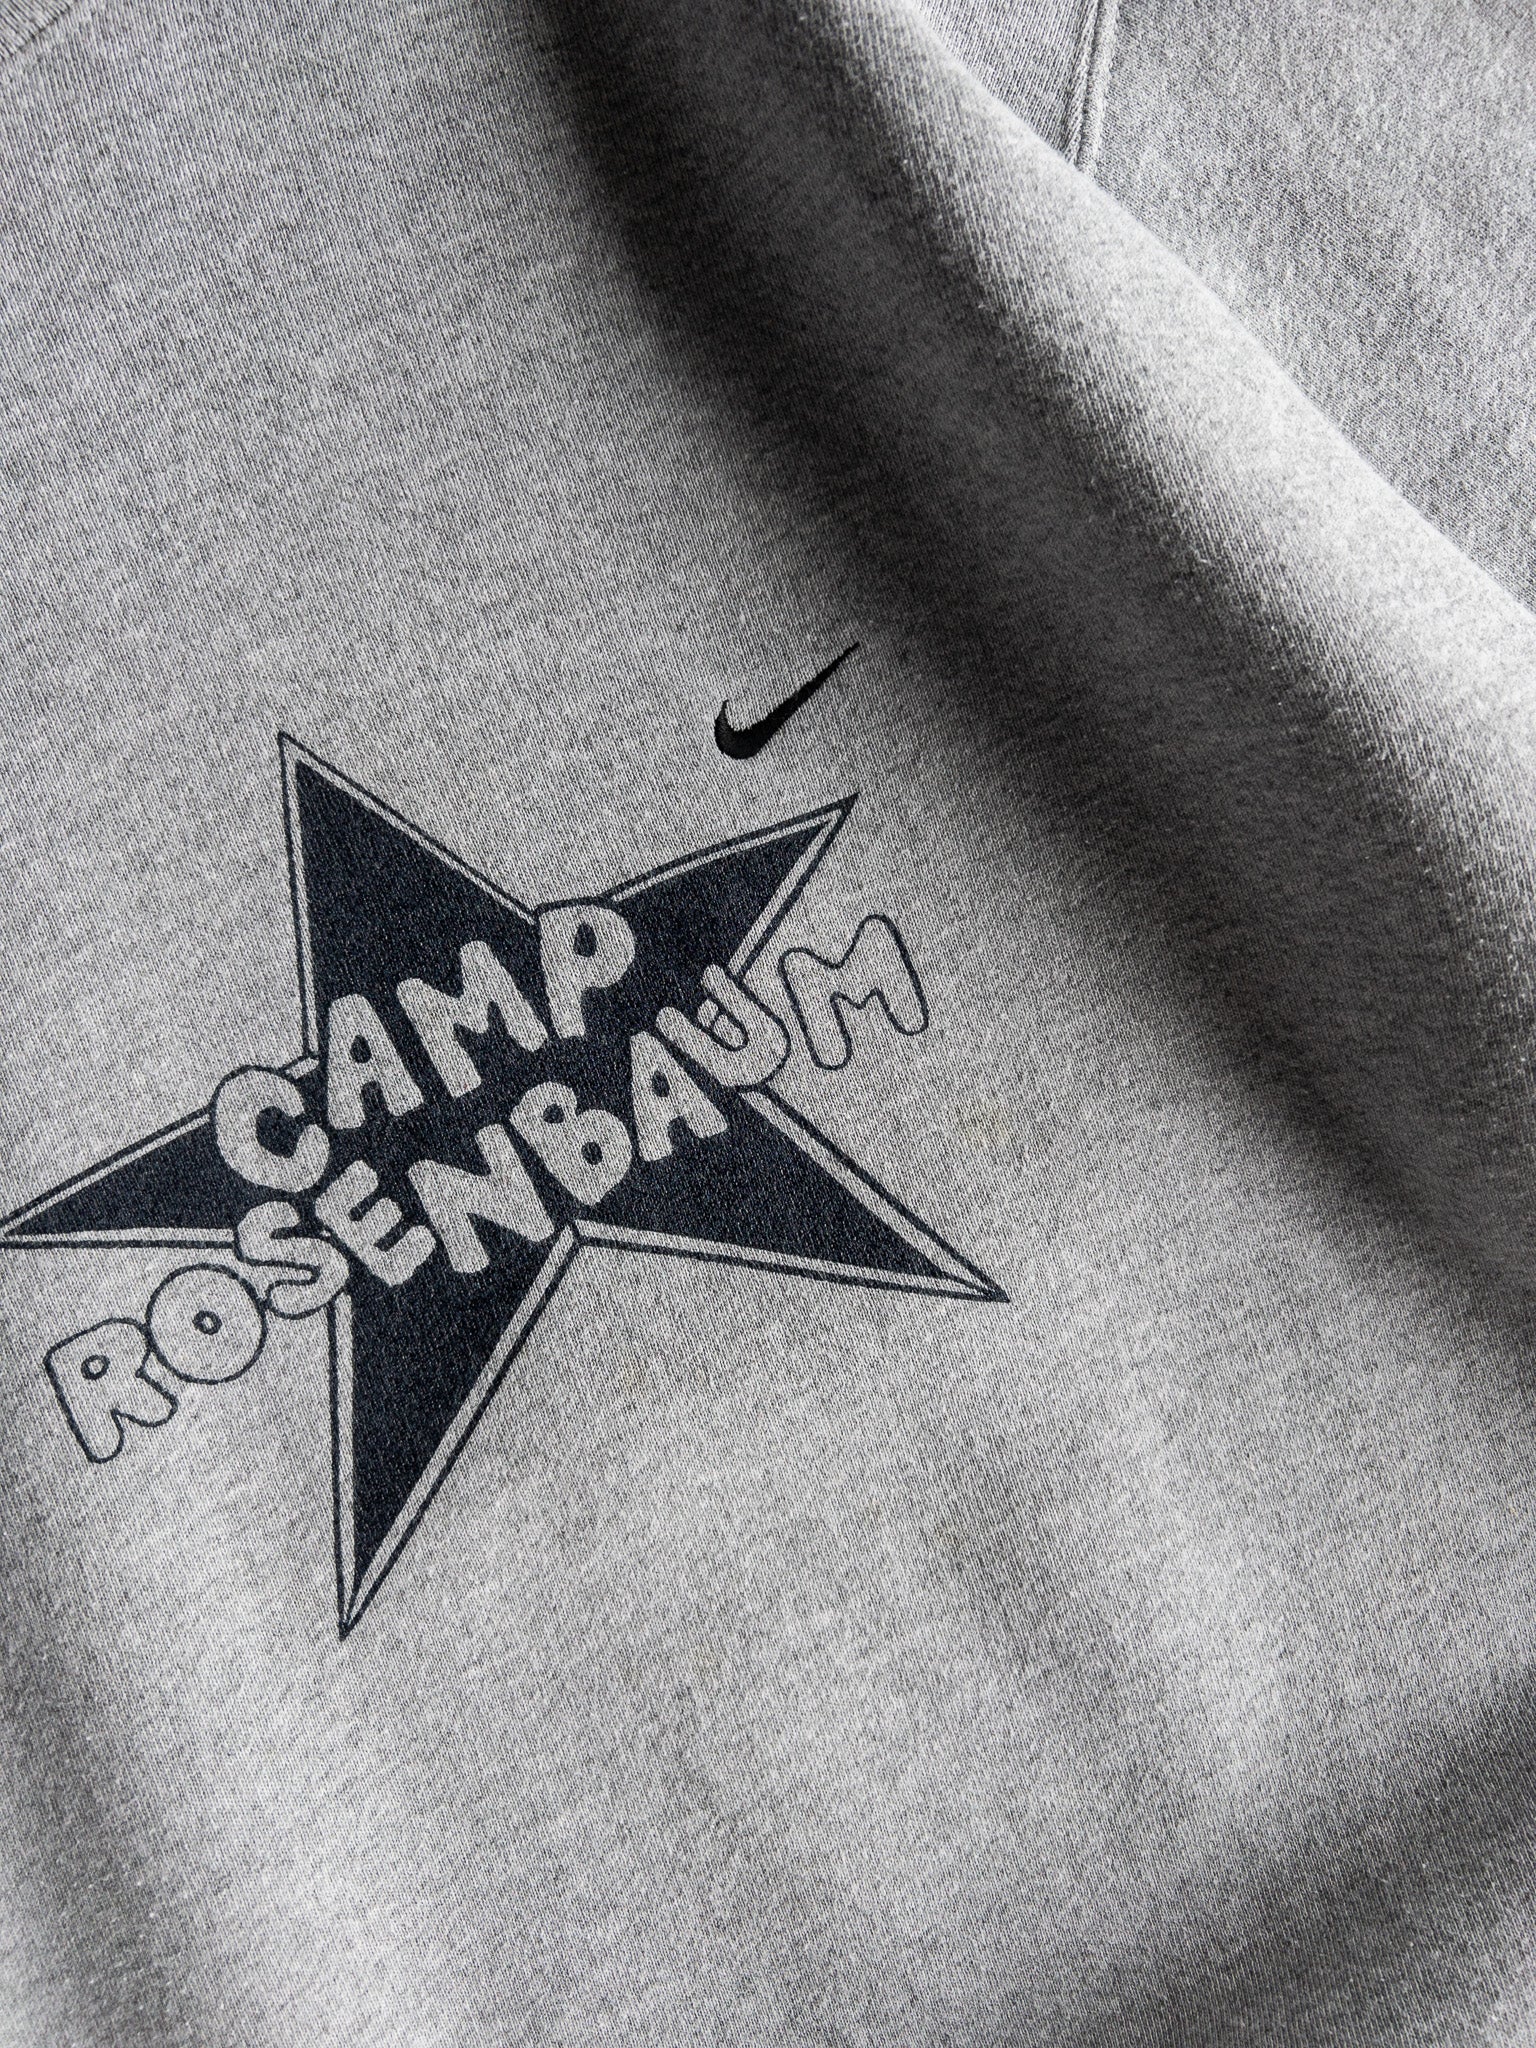 Vintage Nike Camp Rosebaum Sweatshirt (L)